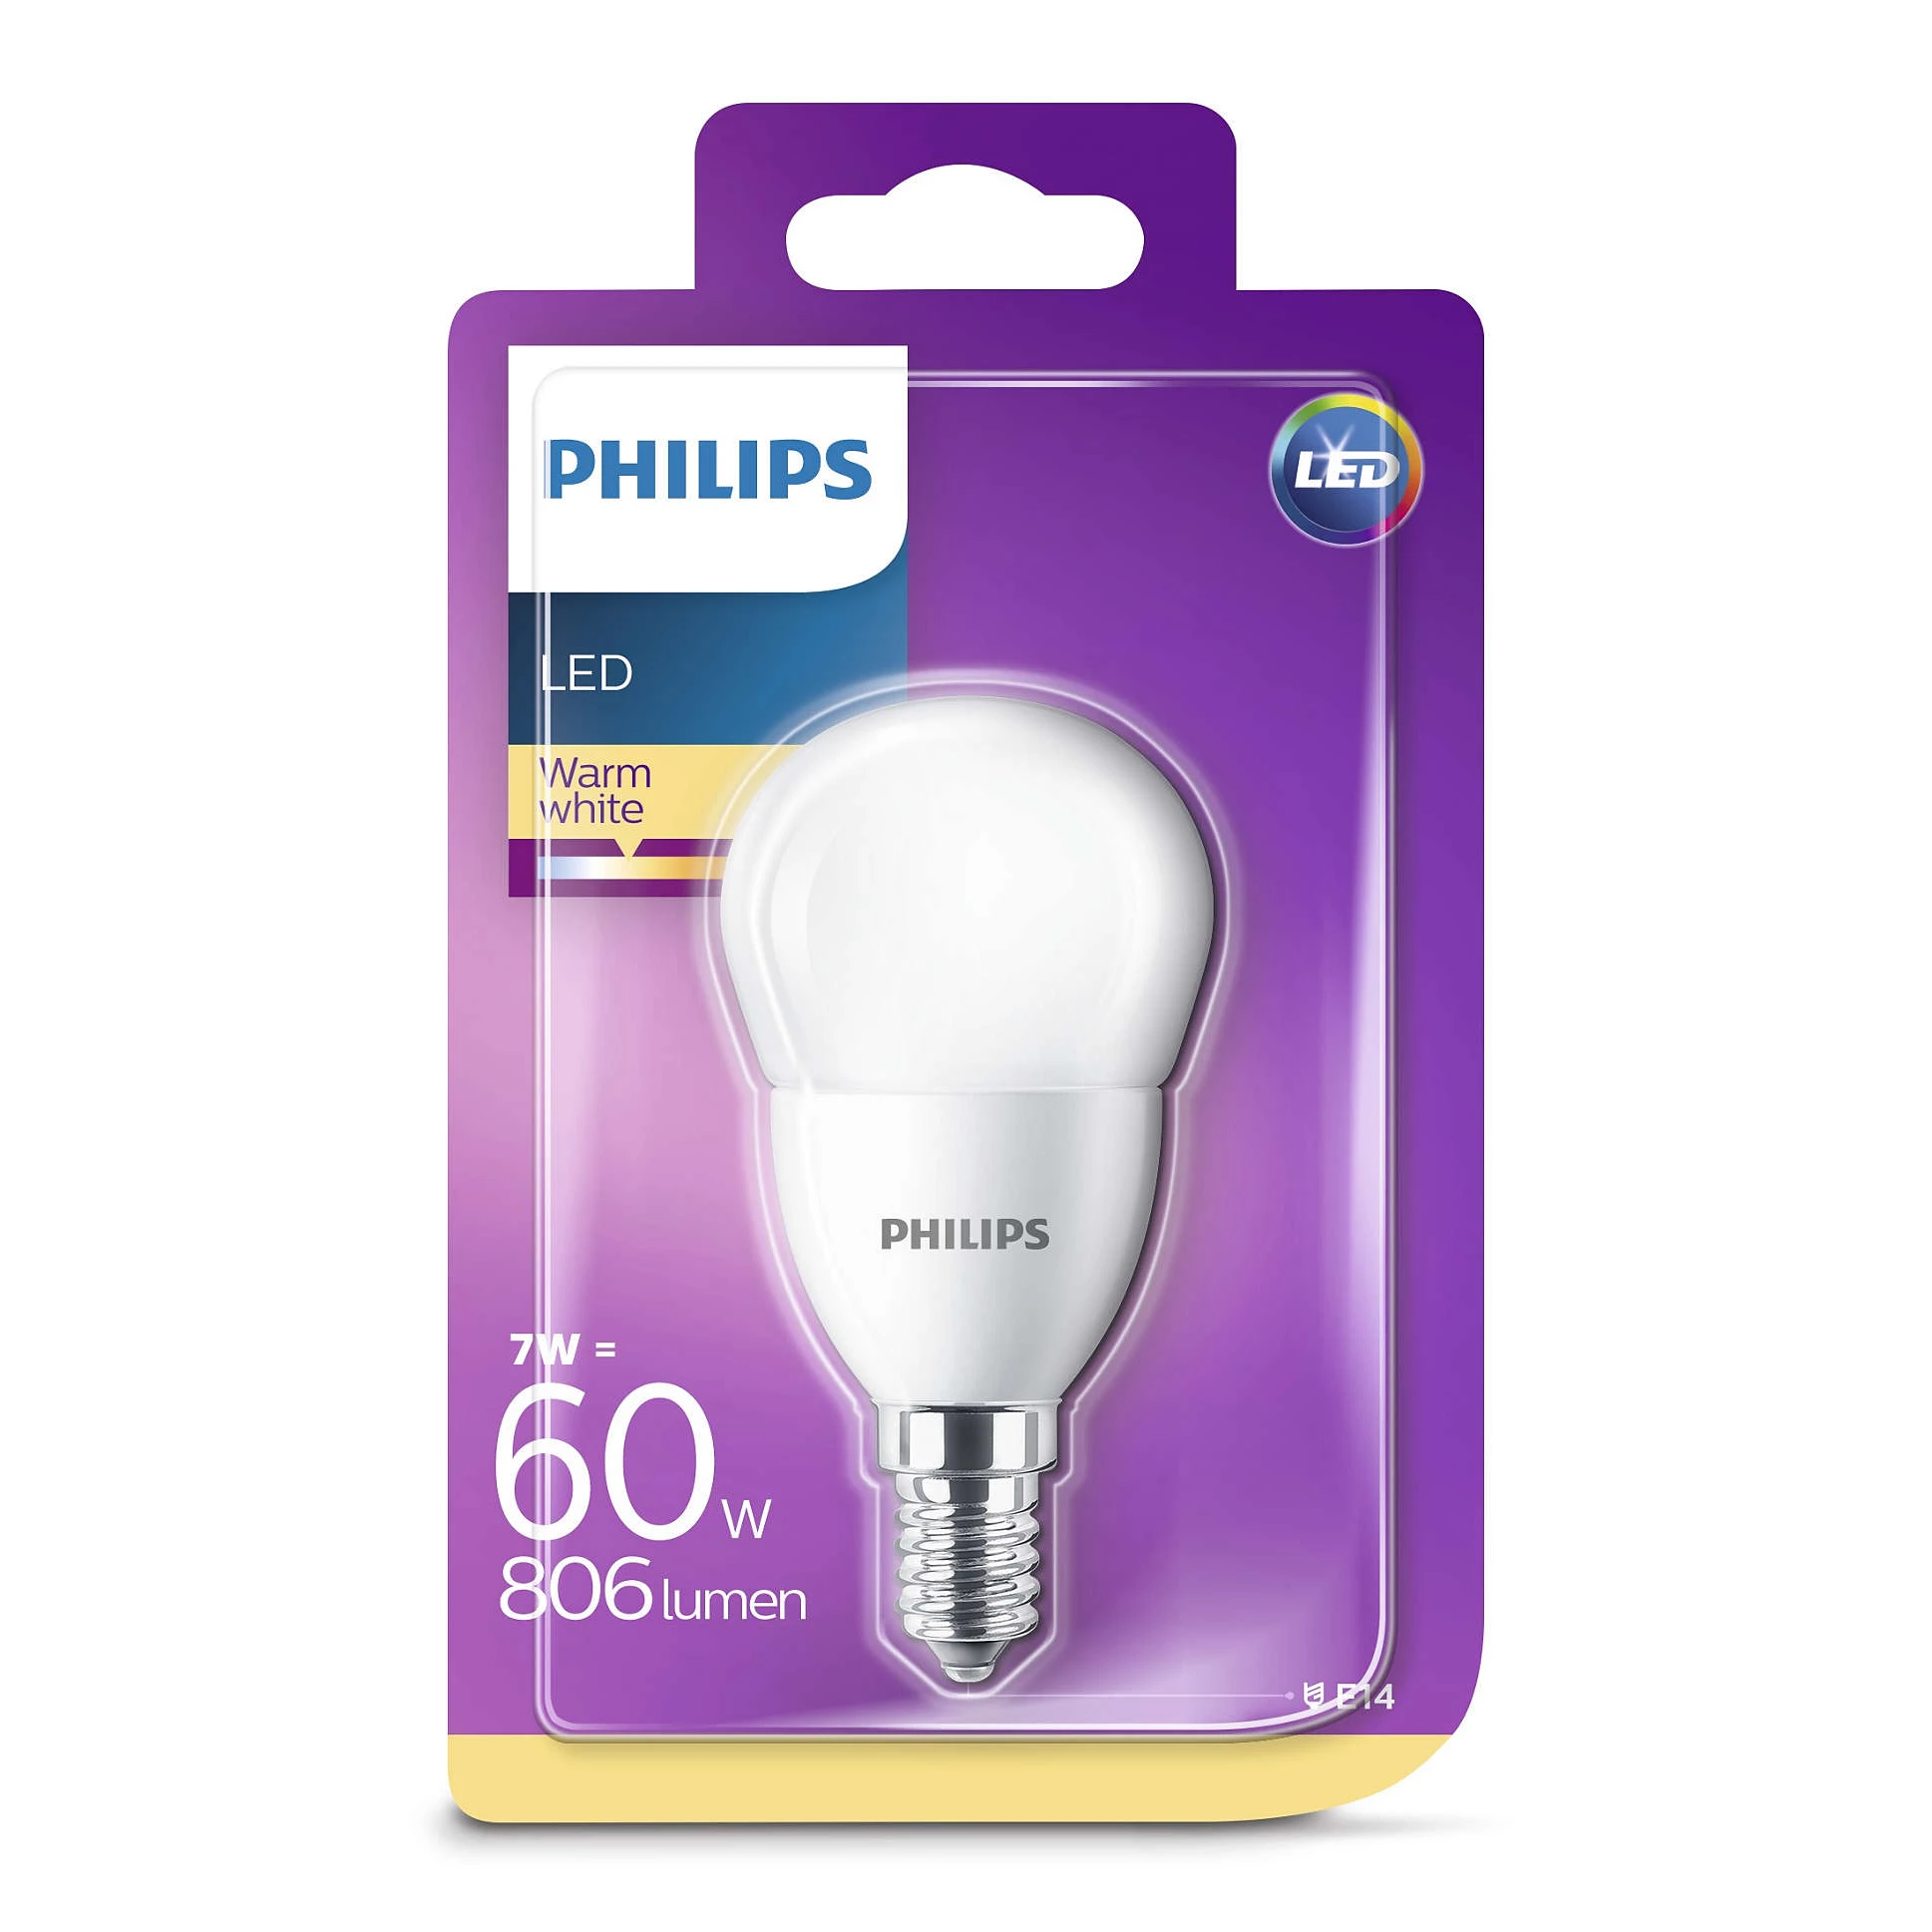 Светодиодные филипс купить. Philips led e27/a60/7w/830. Лампочка Philips 40w 230v. Светодиодная лампа Philips led 4-25w e14 2700k 230v p45 CL ND. Philips 5.5w 2700k 470 лм свеча.